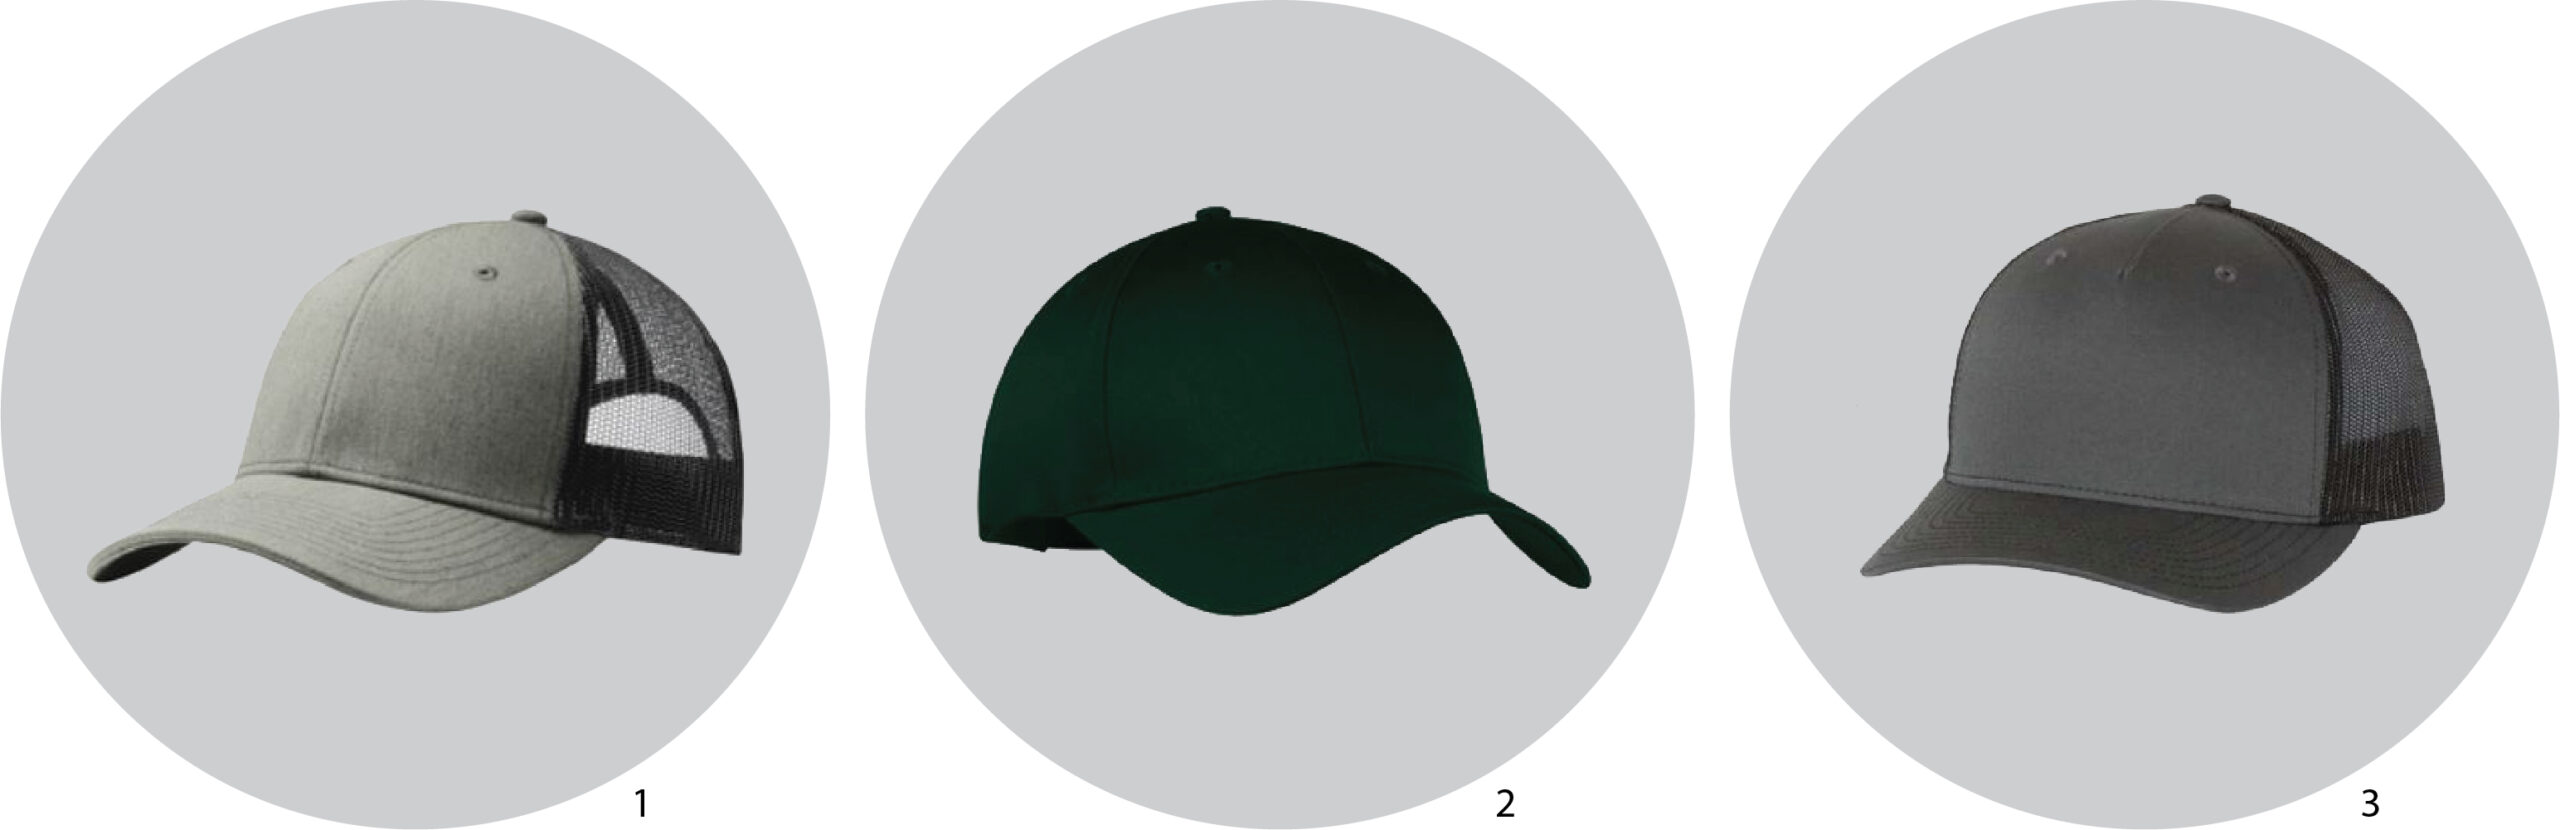 classic baseball cap options 